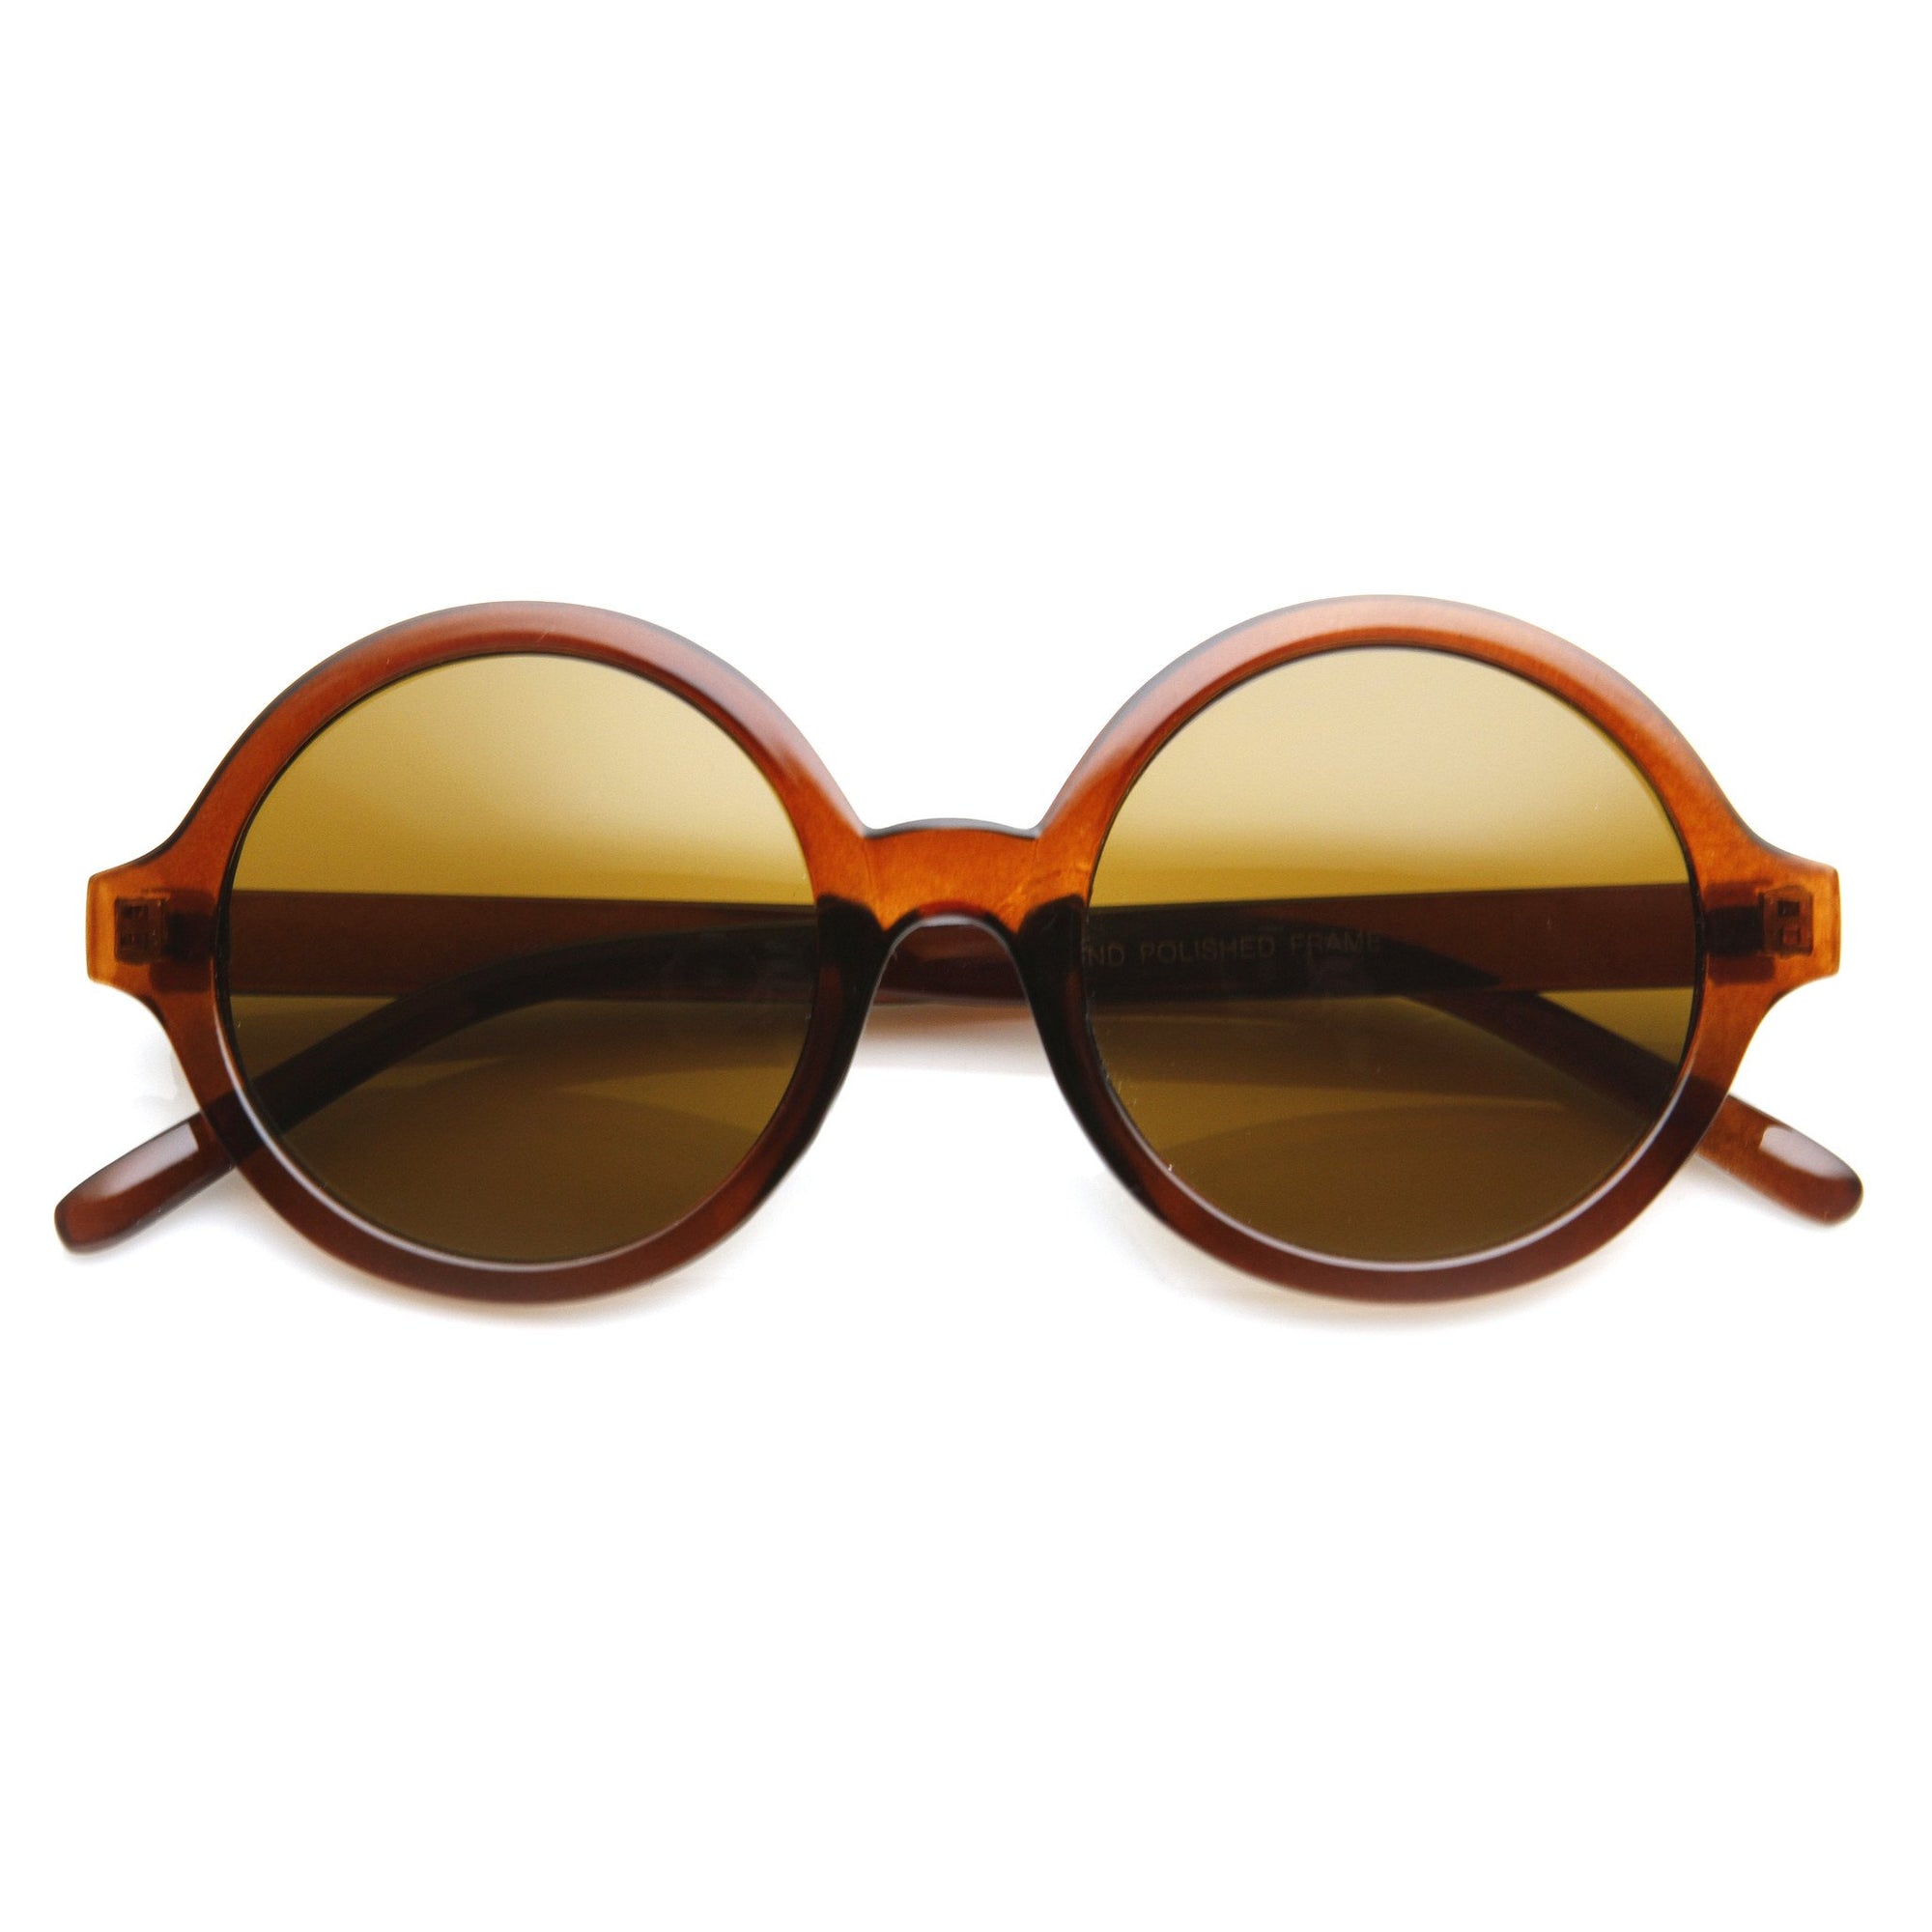 Retro Sleek Large Round Fashion Sunglasses - zeroUV